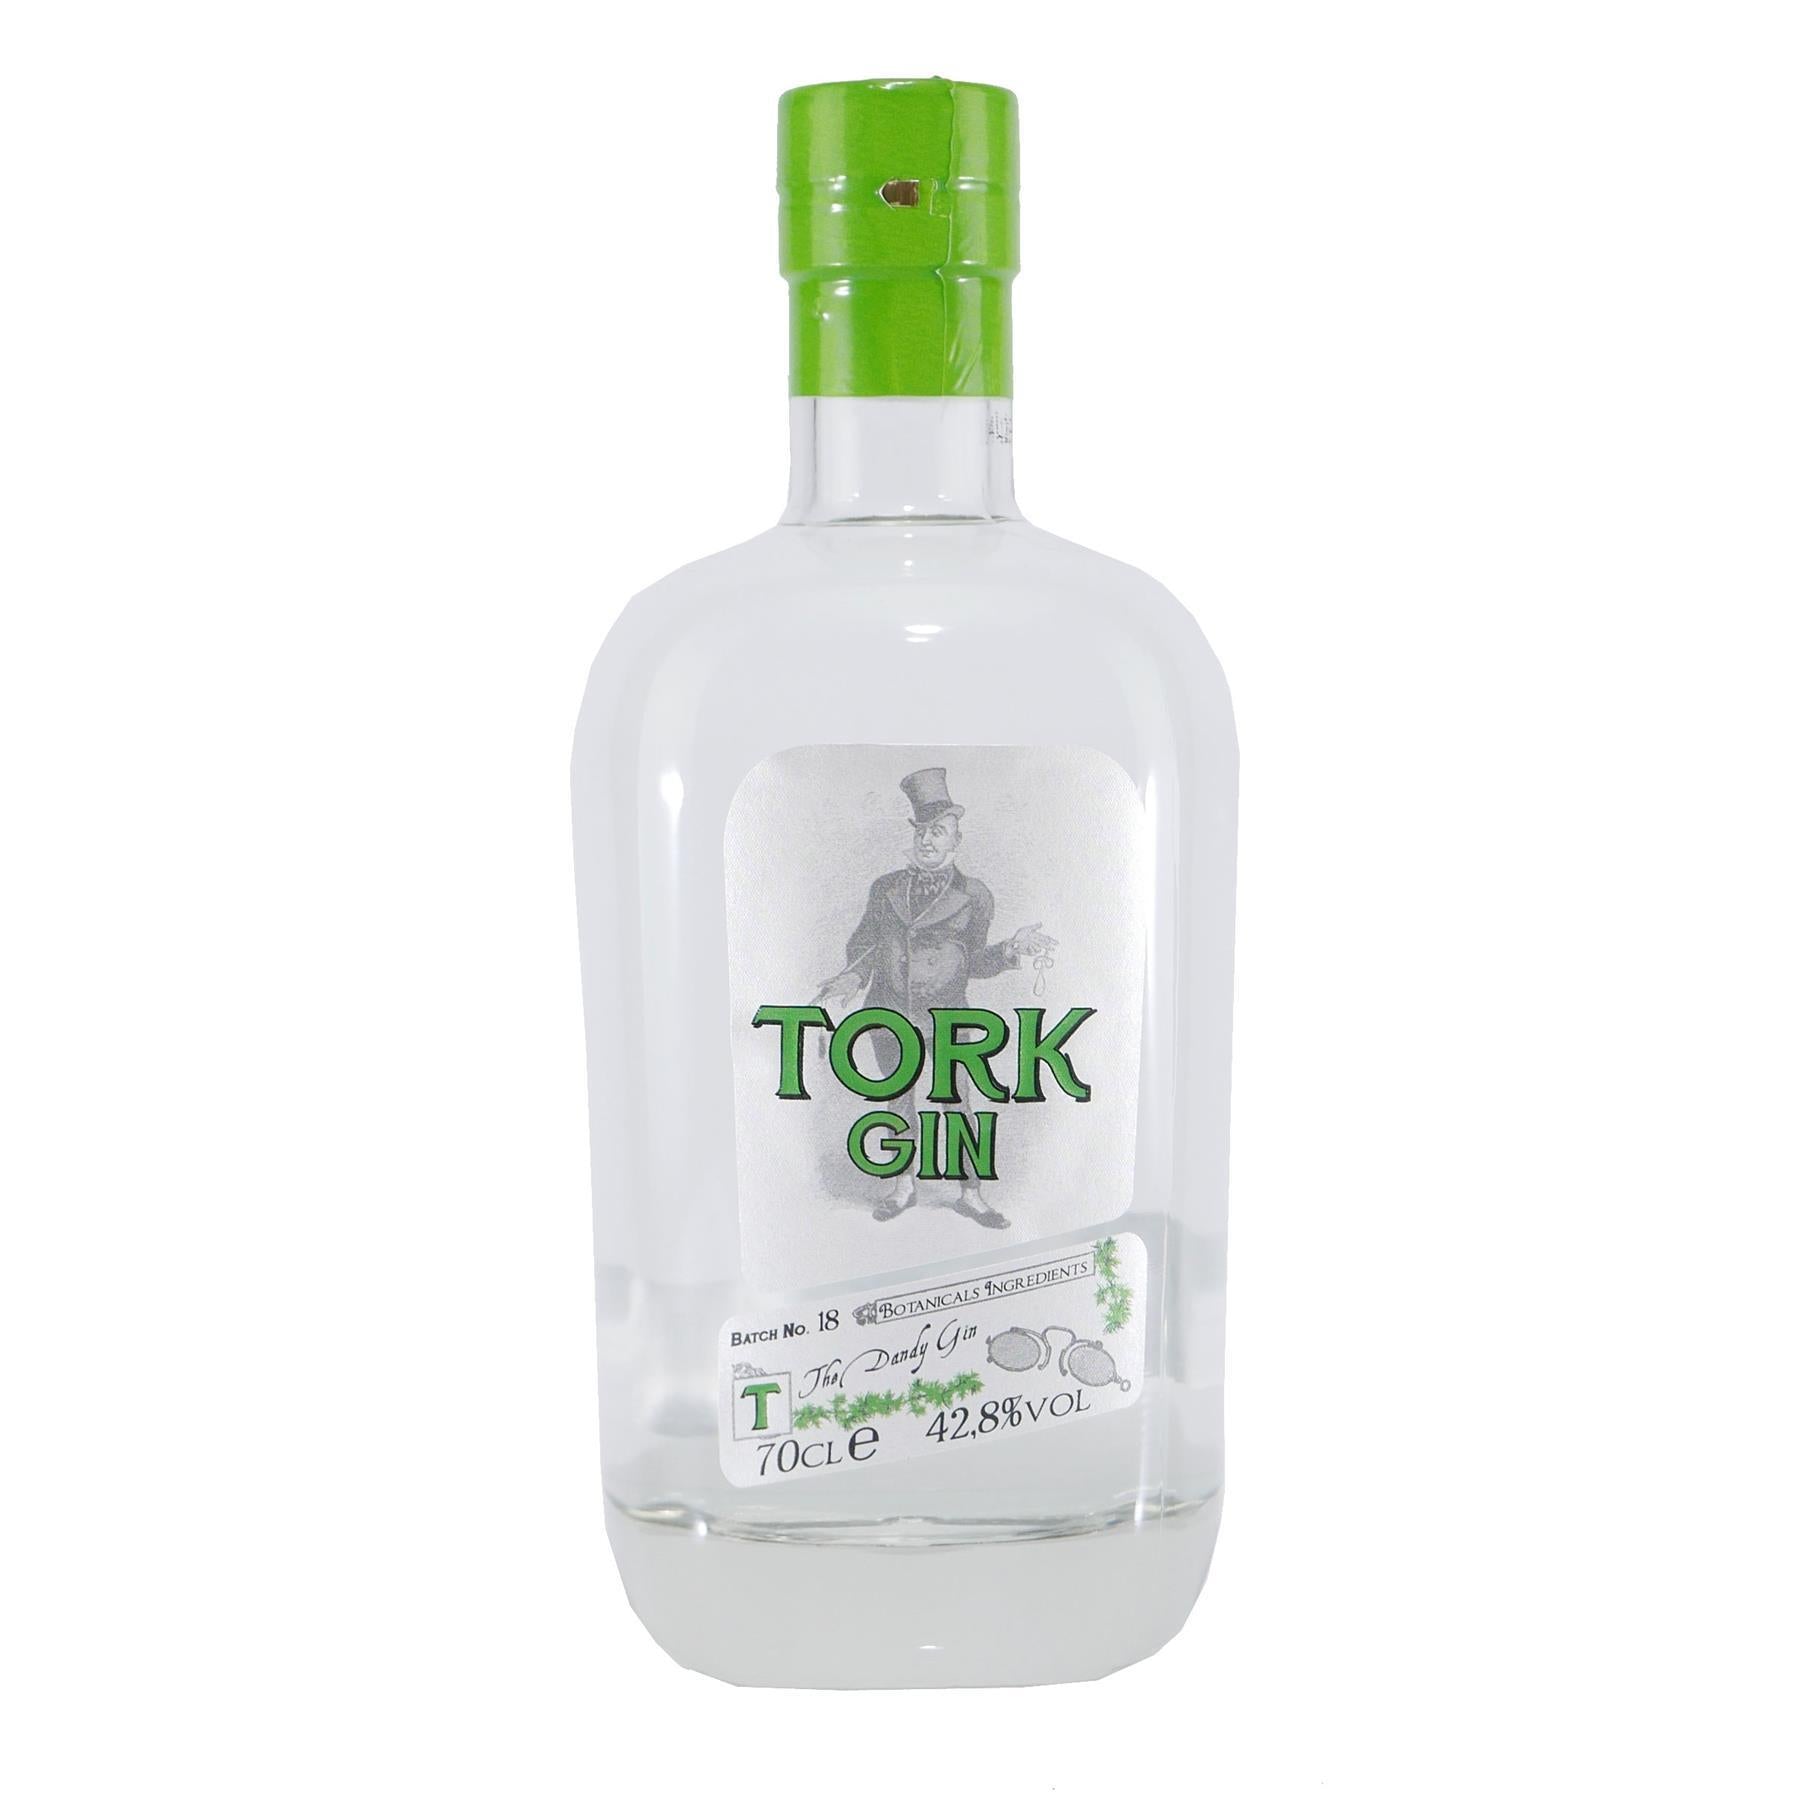 Tork Gin - The Dandy Gin